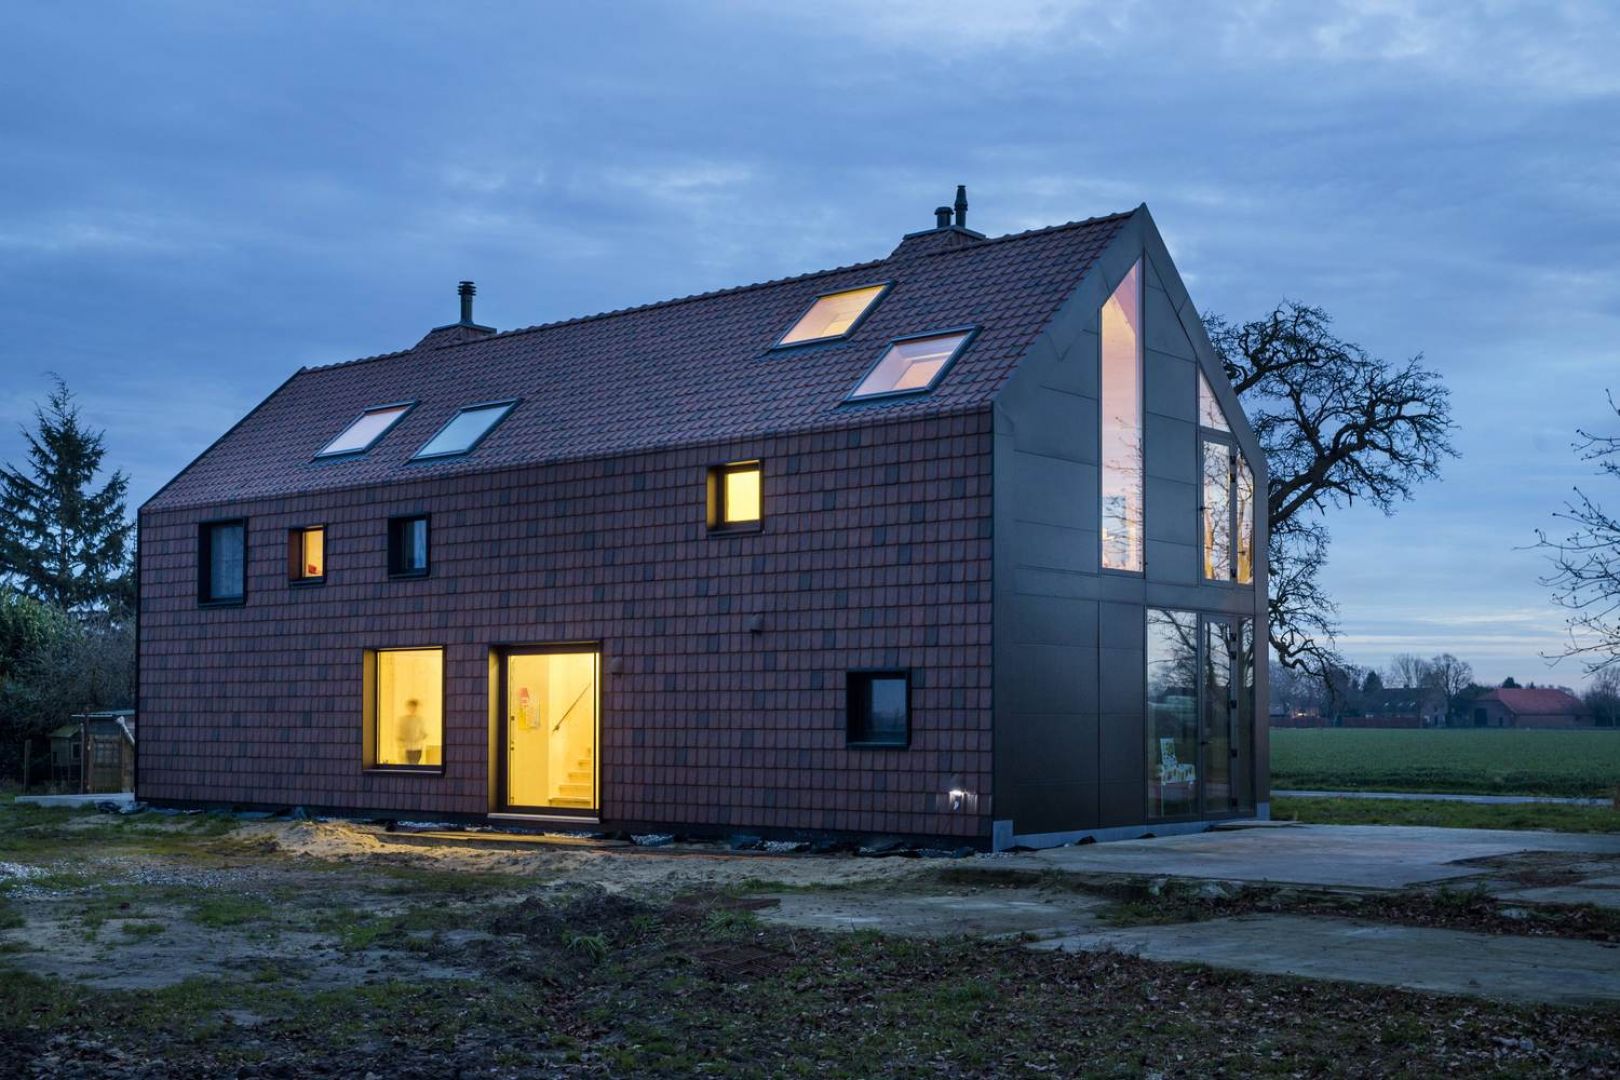 Dom „Jelenia Farma” położona jest w typowym gospodarstwie rolnym w Holandii. Znajdował się tam historyczny, holenderski dom wiejski o charakterystycznej długiej jednolitej fasadzie przechodzącej z dachu na elewacje. Fot. Koen Broos